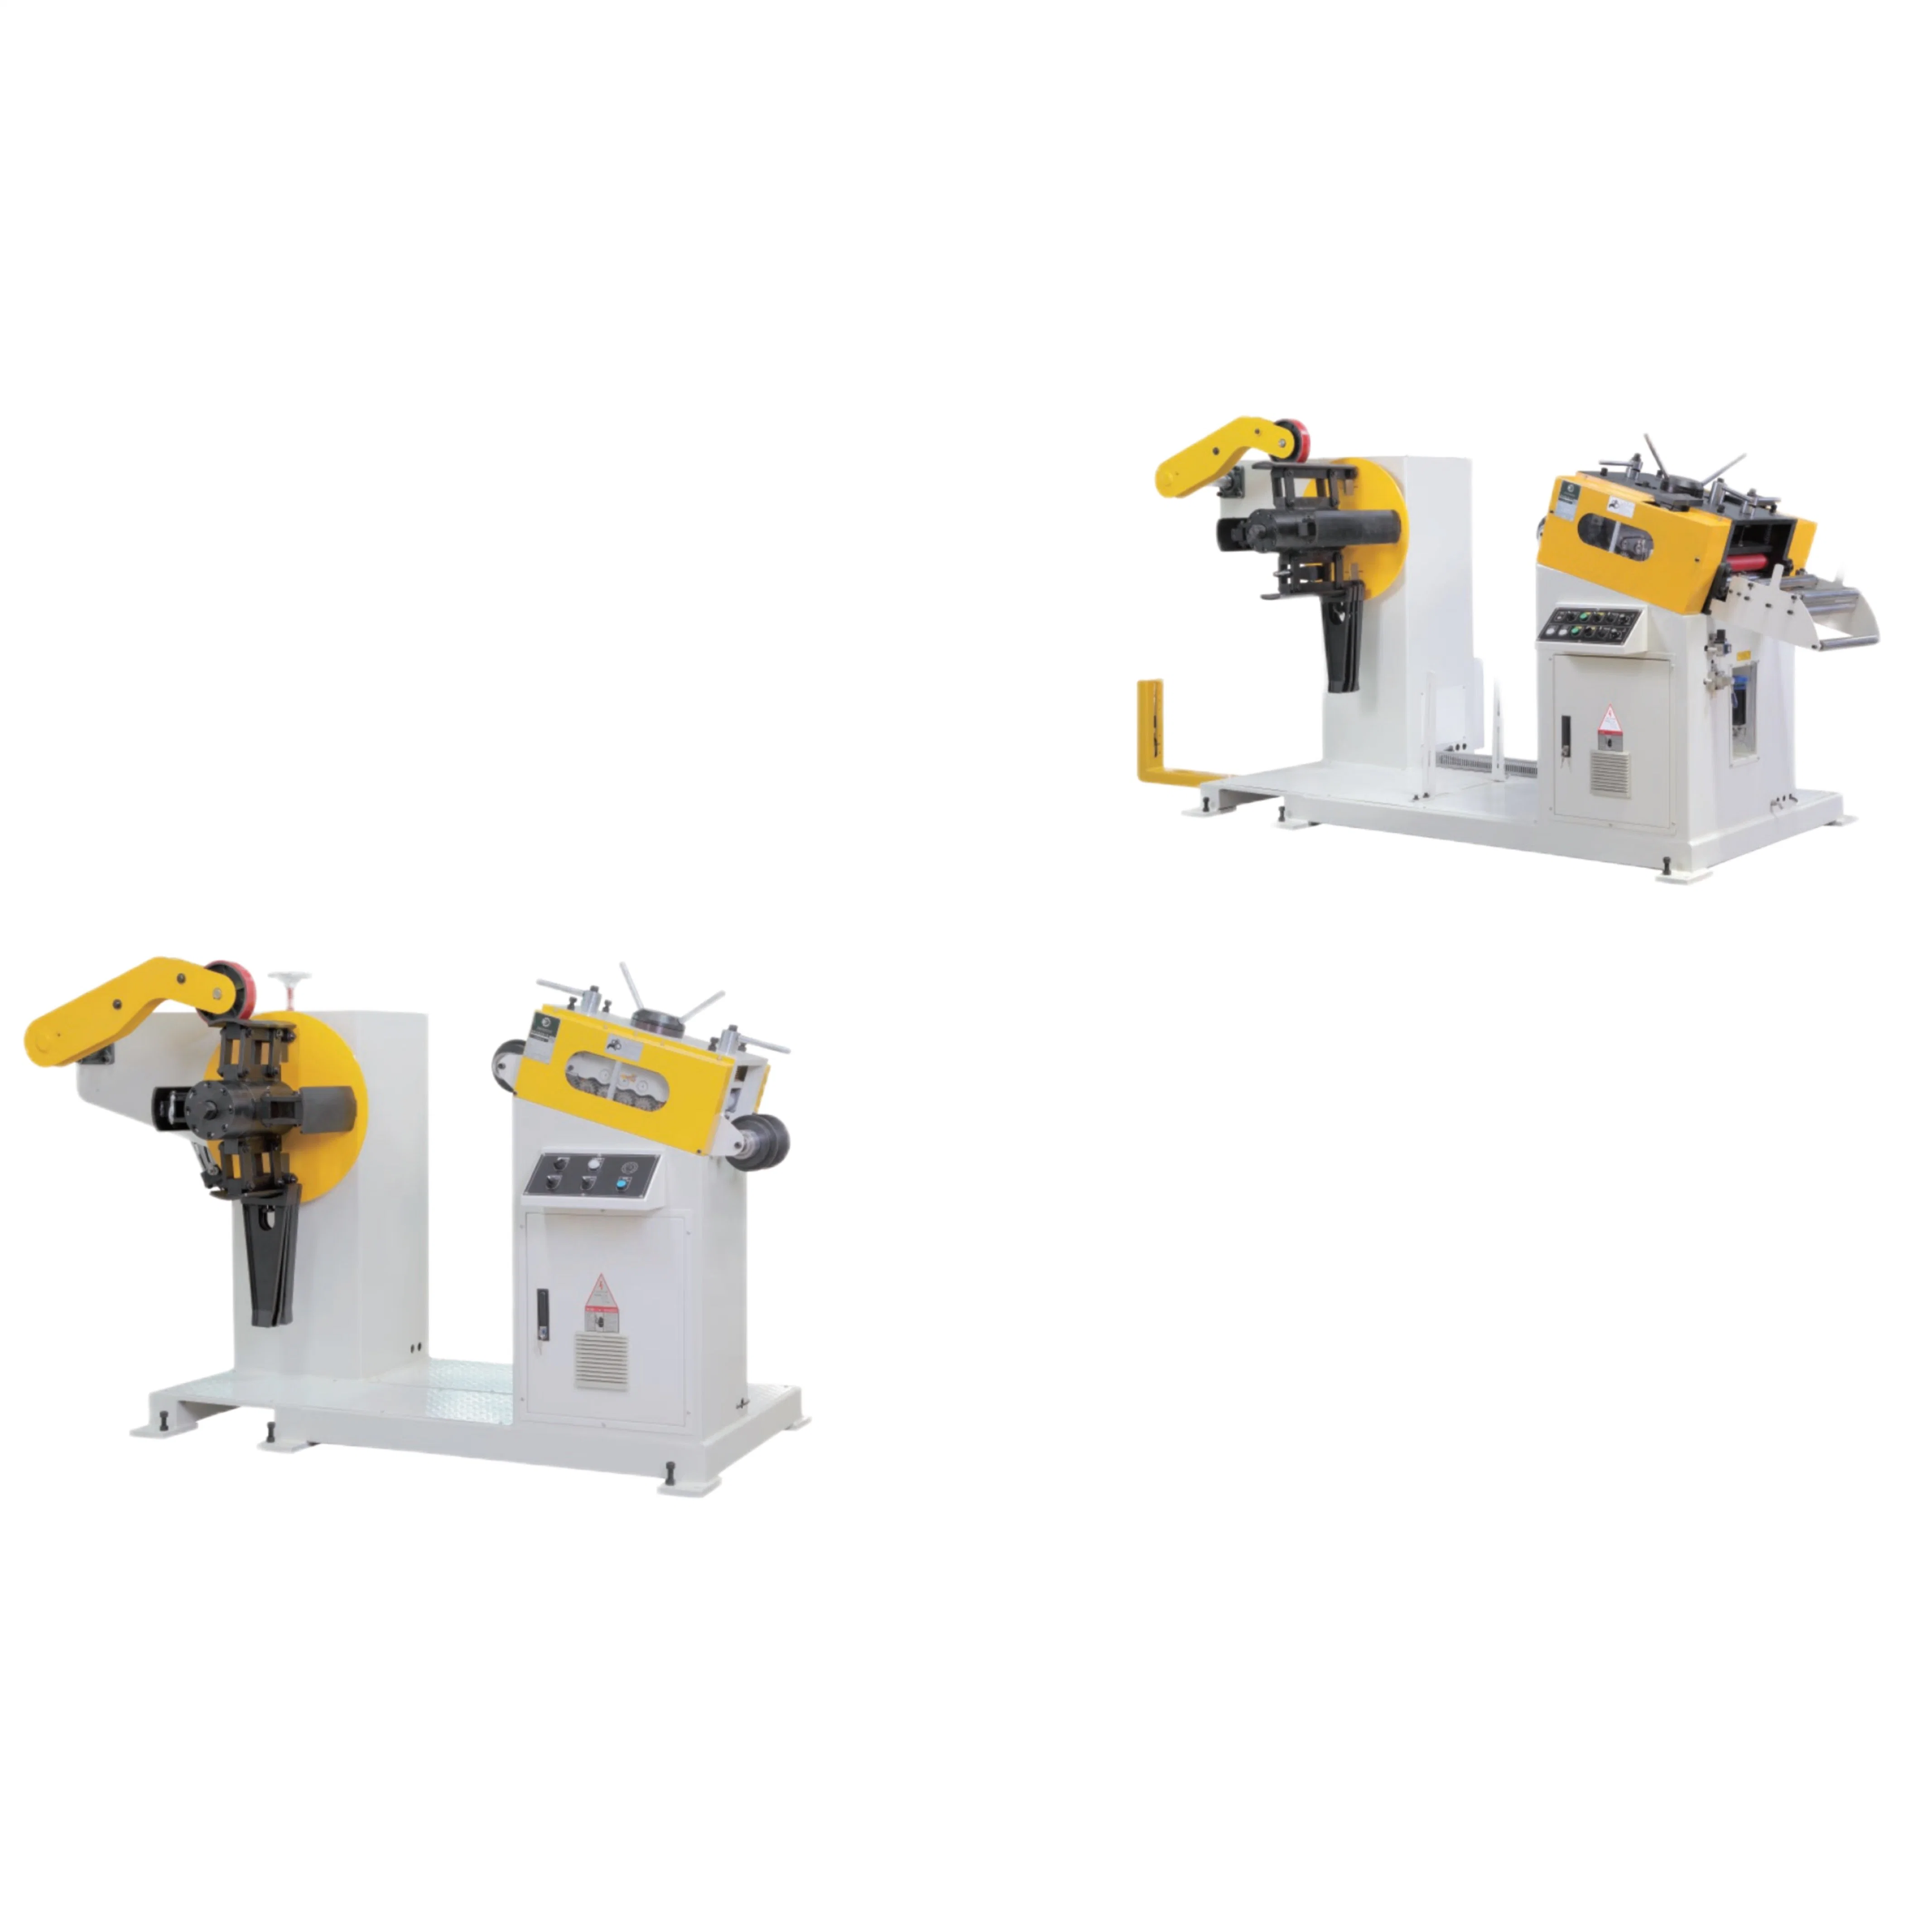 وحدة تغذية تمليس عالية الكثافة 3 في 1 NC وماكينة قص بالنسبة إلى Automatic Press Machine Stamping Sheet Metal